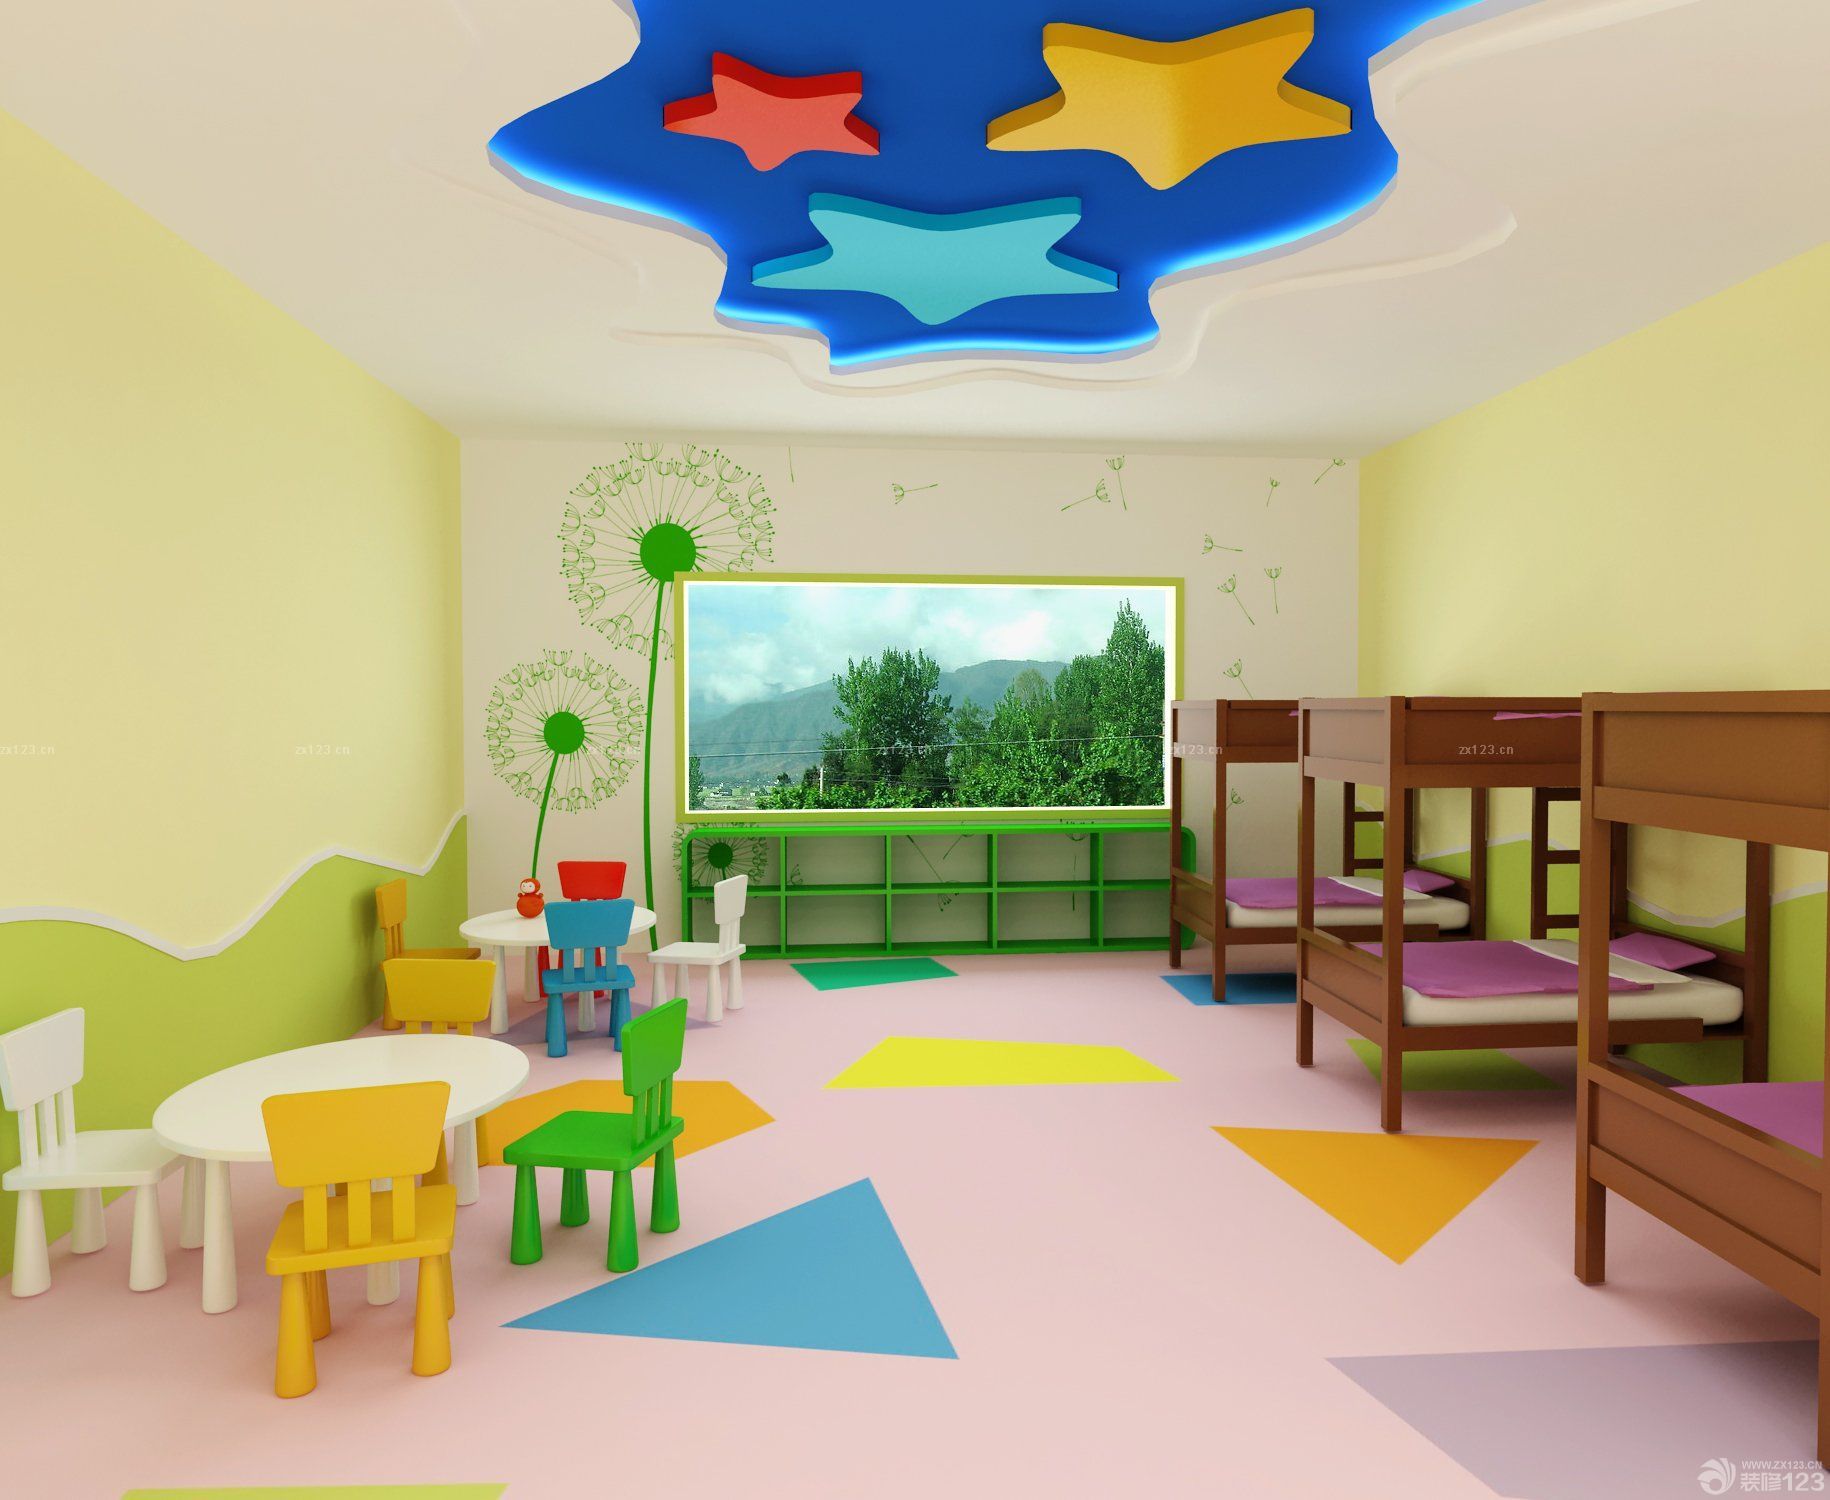 设计图分享 幼儿园室外装饰图片 > 小能人博尔幼儿园室内外环境  小能